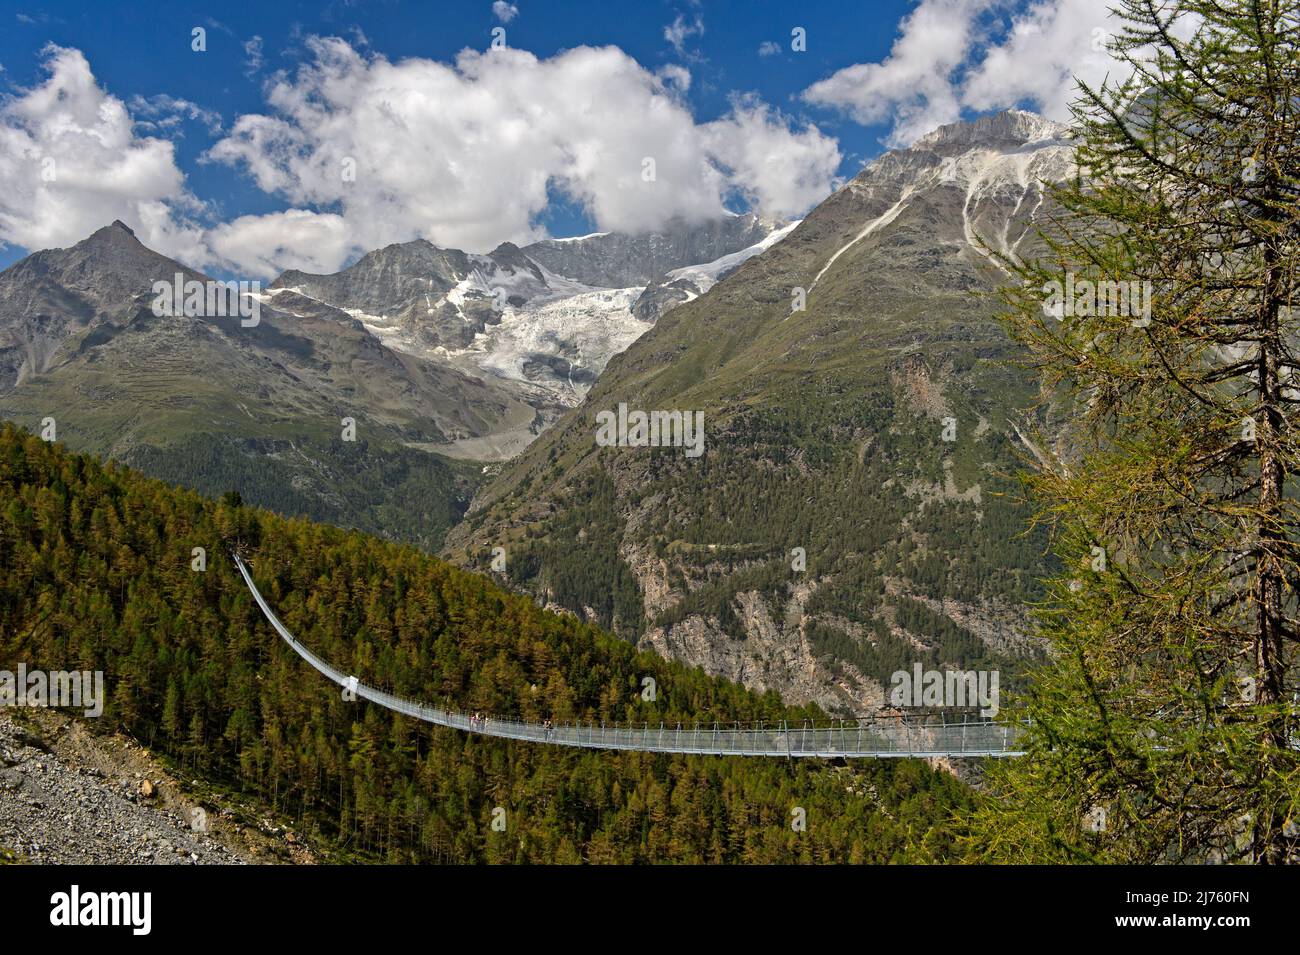 Die Charles Kuonen Hängebrücke mit einer Spannweite von fast 500 Metern in den Walliser Alpen, Randa, Wallis, Schweiz. Stockfoto